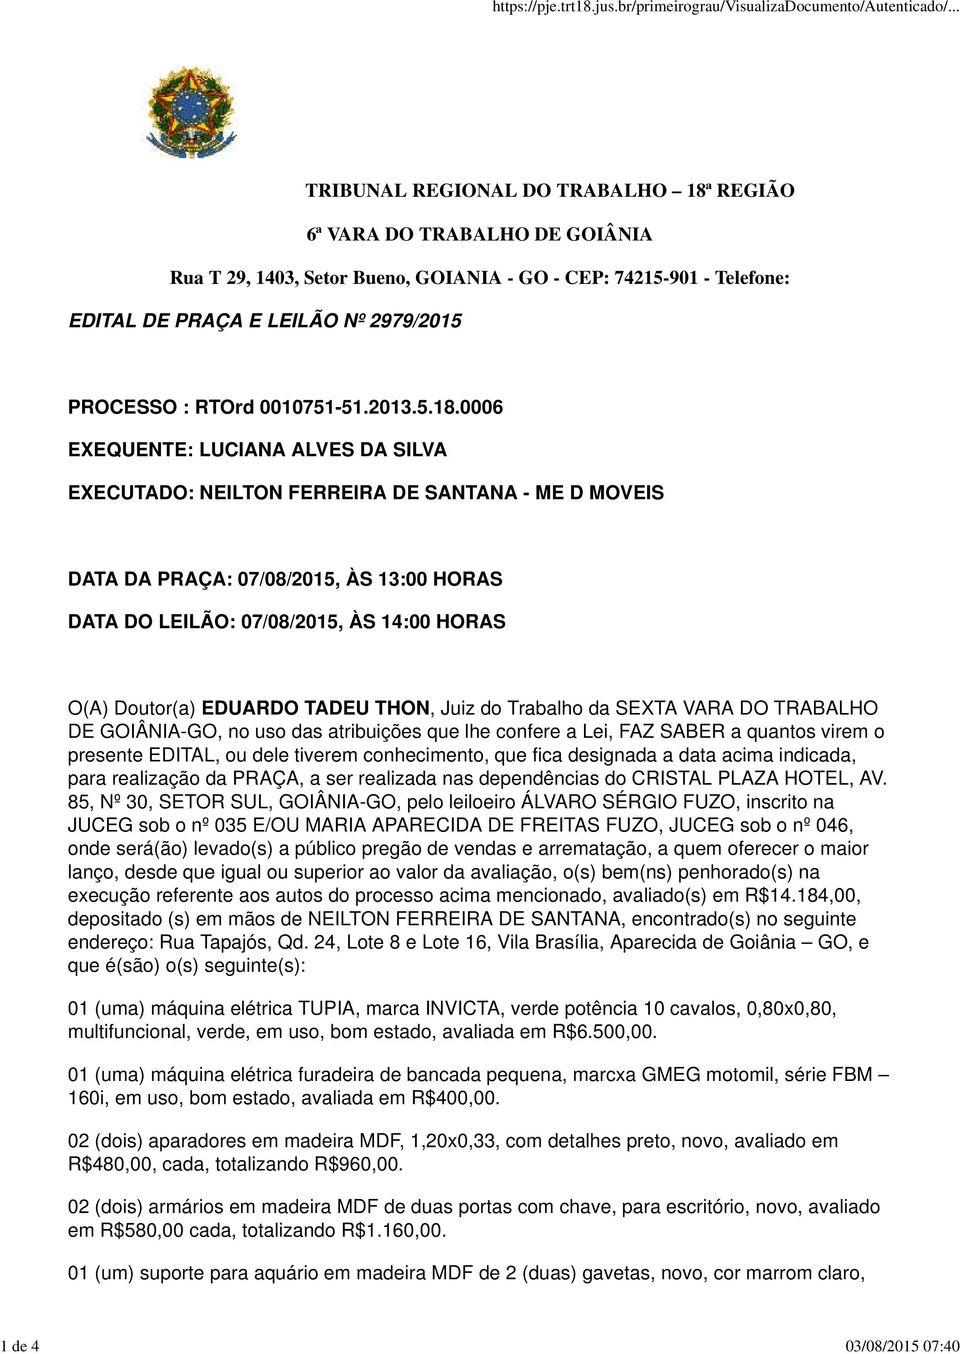 0006 EXEQUENTE: LUCIANA ALVES DA SILVA EXECUTADO: NEILTON FERREIRA DE SANTANA - ME D MOVEIS DATA DA PRAÇA: 07/08/2015, ÀS 13:00 HORAS DATA DO LEILÃO: 07/08/2015, ÀS 14:00 HORAS O(A) Doutor(a) EDUARDO